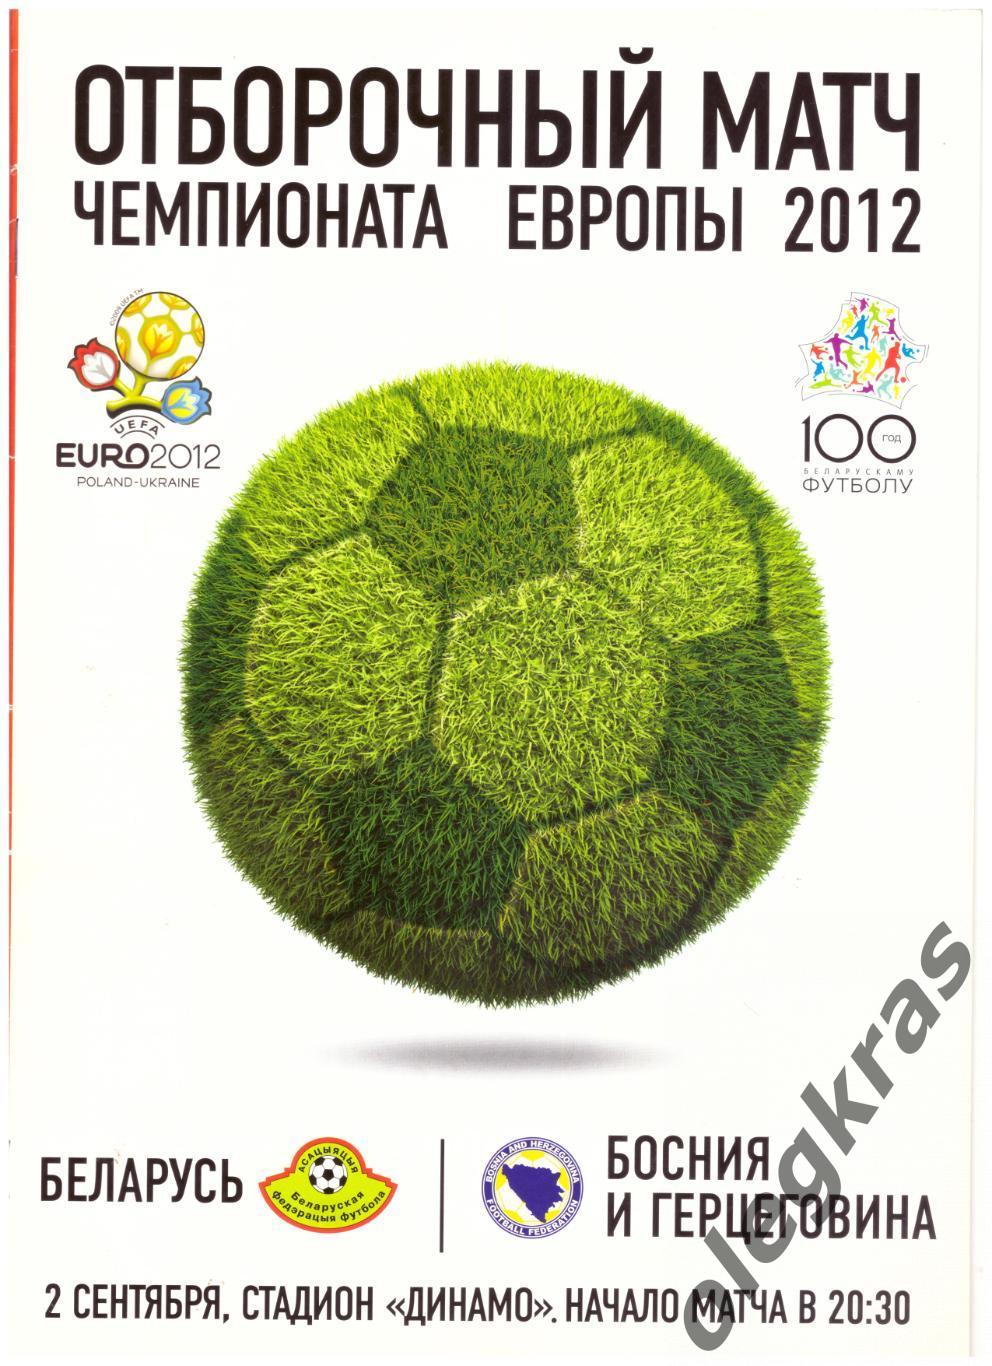 Беларусь - Босния и Герцеговина - 2 сентября 2011 года.